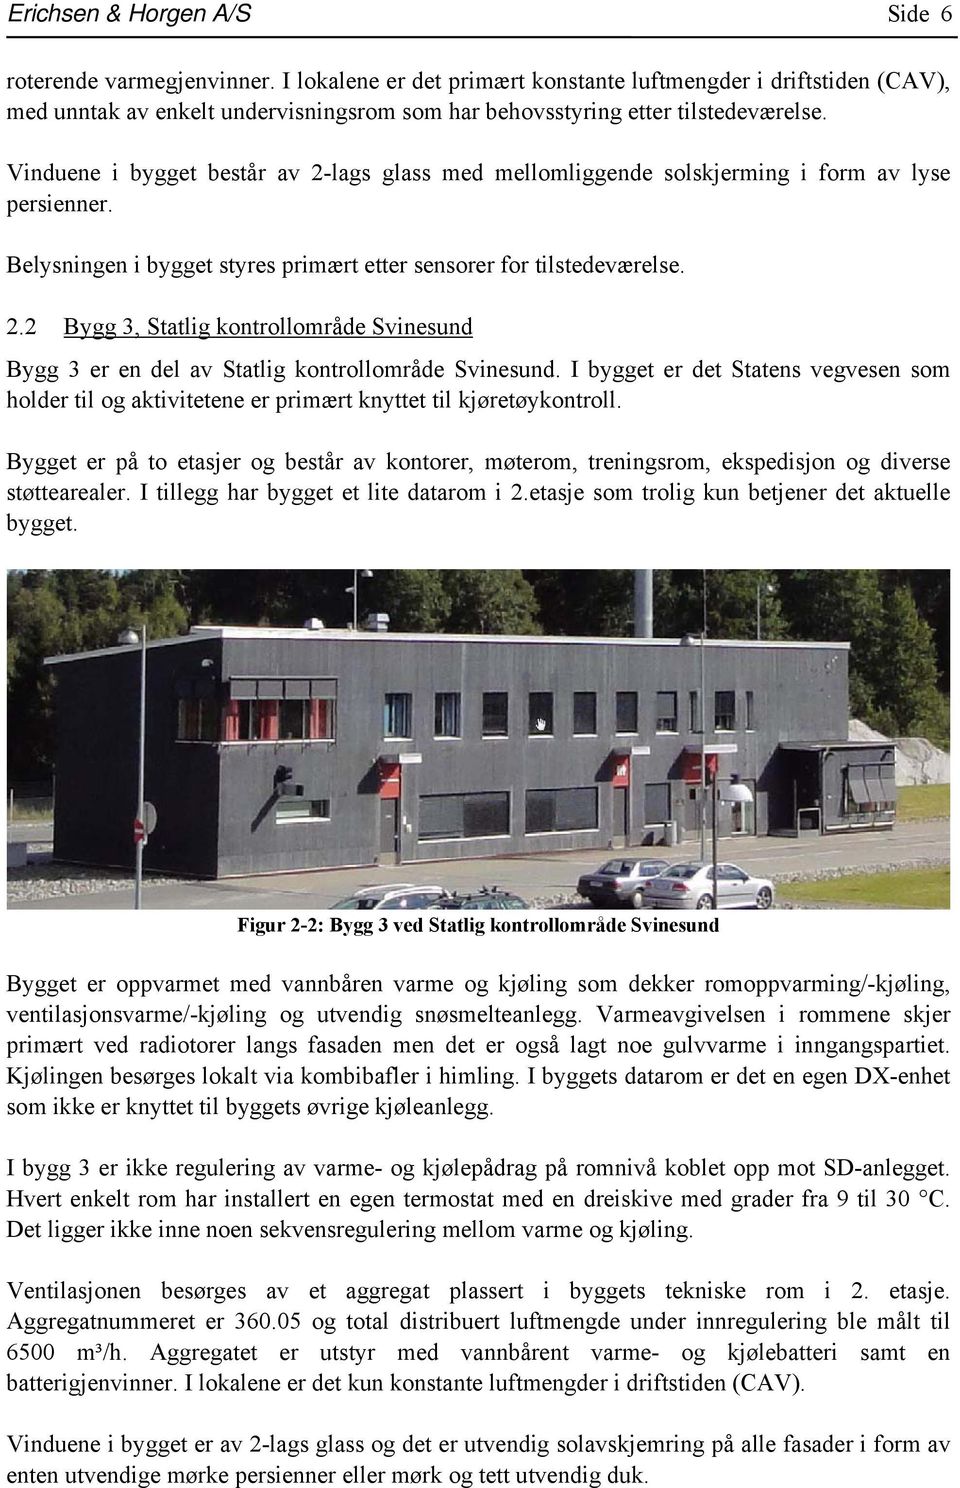 Vinduene i bygget består av 2-lags glass med mellomliggende solskjerming i form av lyse persienner. Belysningen i bygget styres primært etter sensorer for tilstedeværelse. 2.2 Bygg 3, Statlig kontrollområde Svinesund Bygg 3 er en del av Statlig kontrollområde Svinesund.